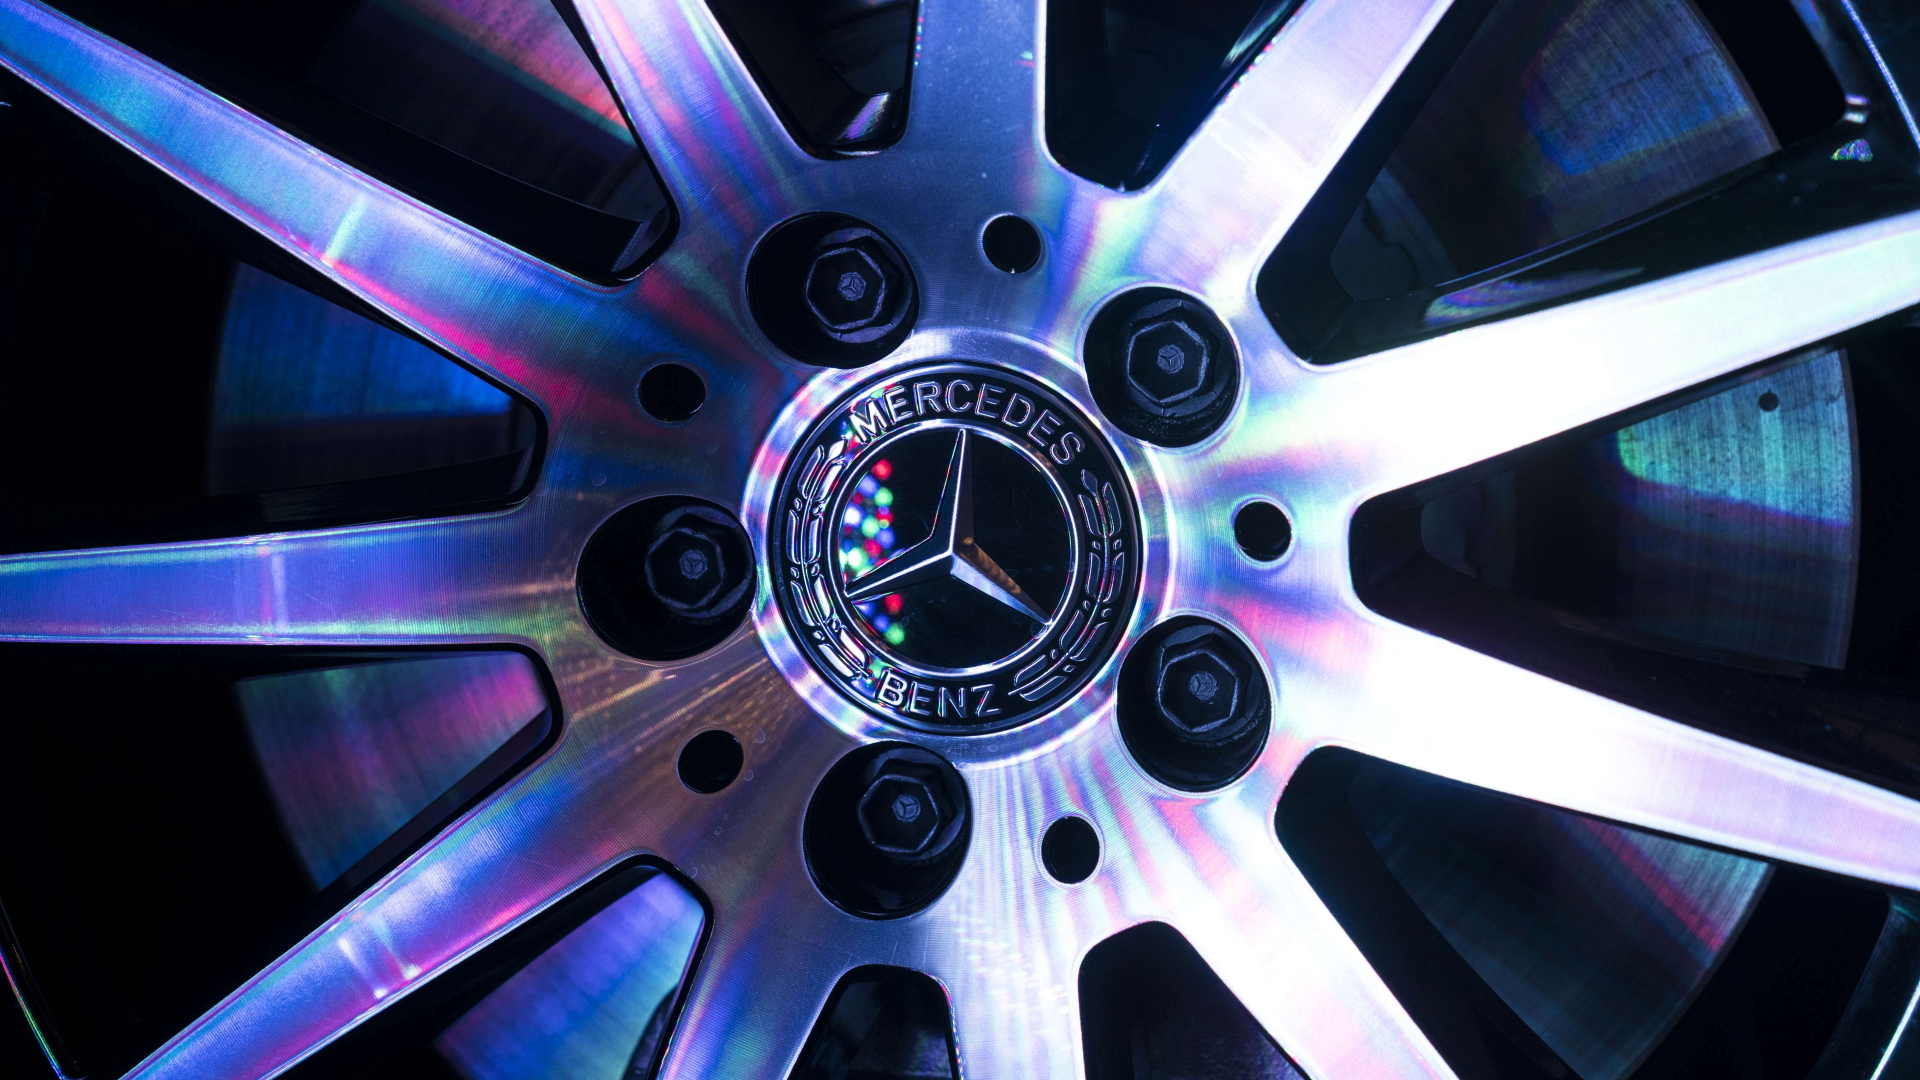 Auf einer Radkappe ist das Mercedes-Benz-Logo zu sehen.